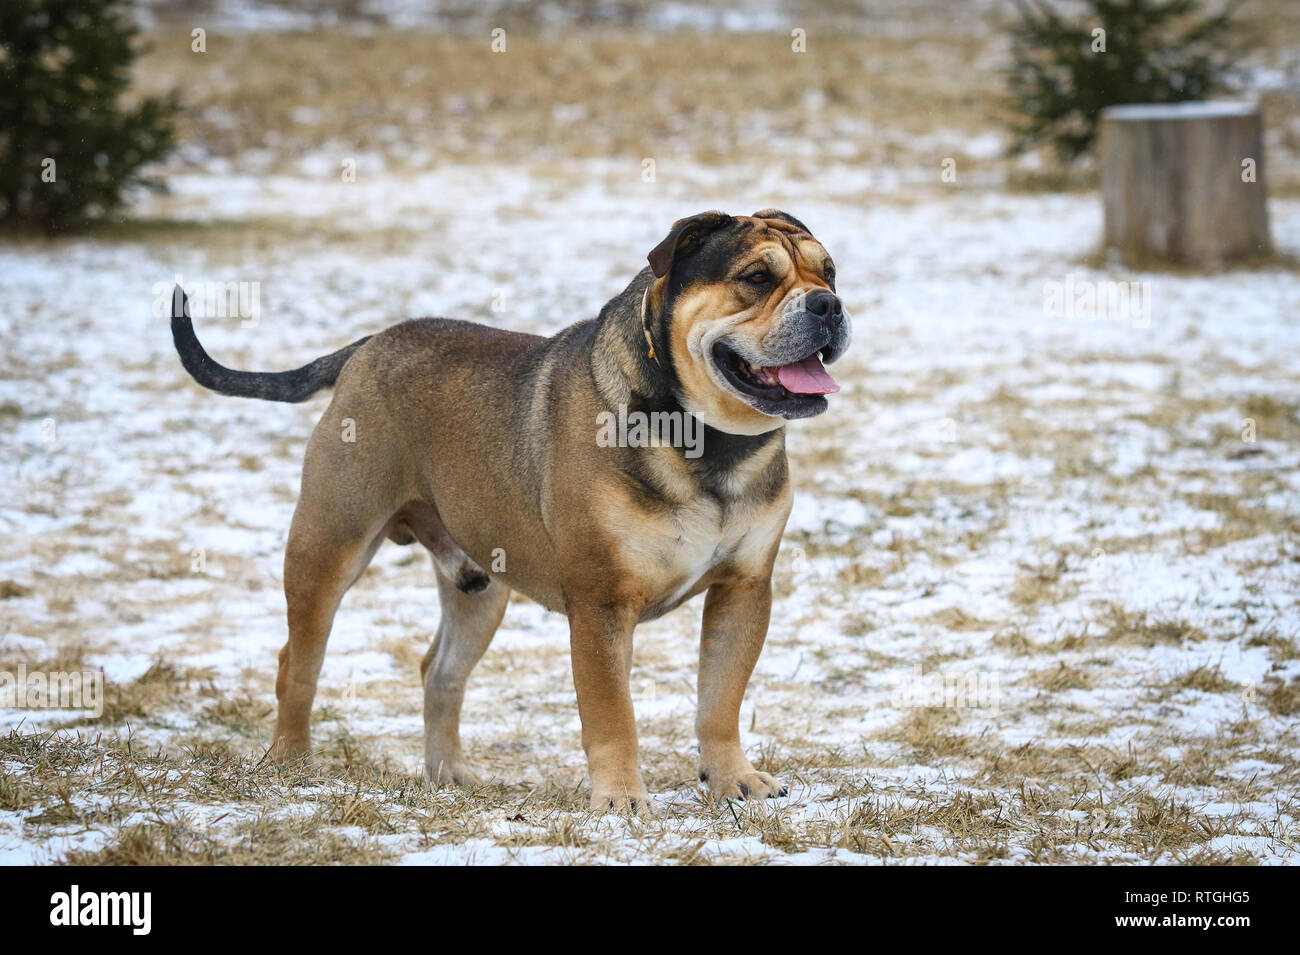 Ca de Bou (Mallorquin Mastiff) male dog stands outdoors Stock Photo